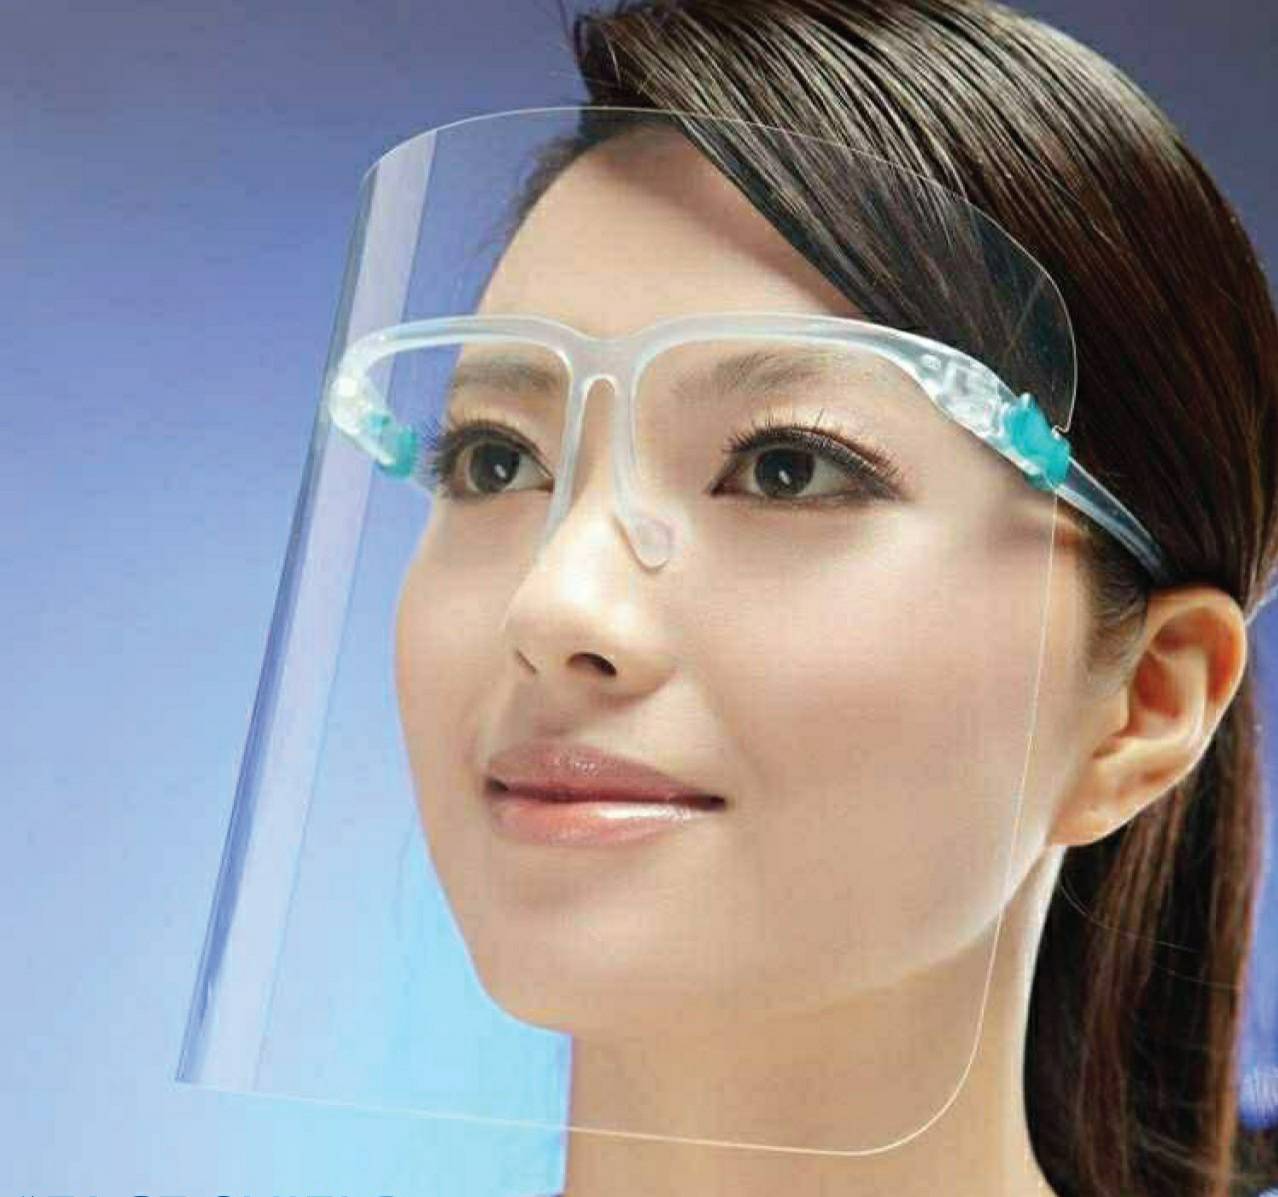 แว่นเฟสชิล เฟซชิลด์ Face shield (ส่งจากไทย) อย่าลืมลอกพลาสติกออกจากแผ่นใสนะคะ พลาสติกเกรดเอ ไม่แข็งไม่คม ประกอบง่าย สวมเหมือนแว่นตา น้ำหนักเบา ไม่เจ็บหน้า